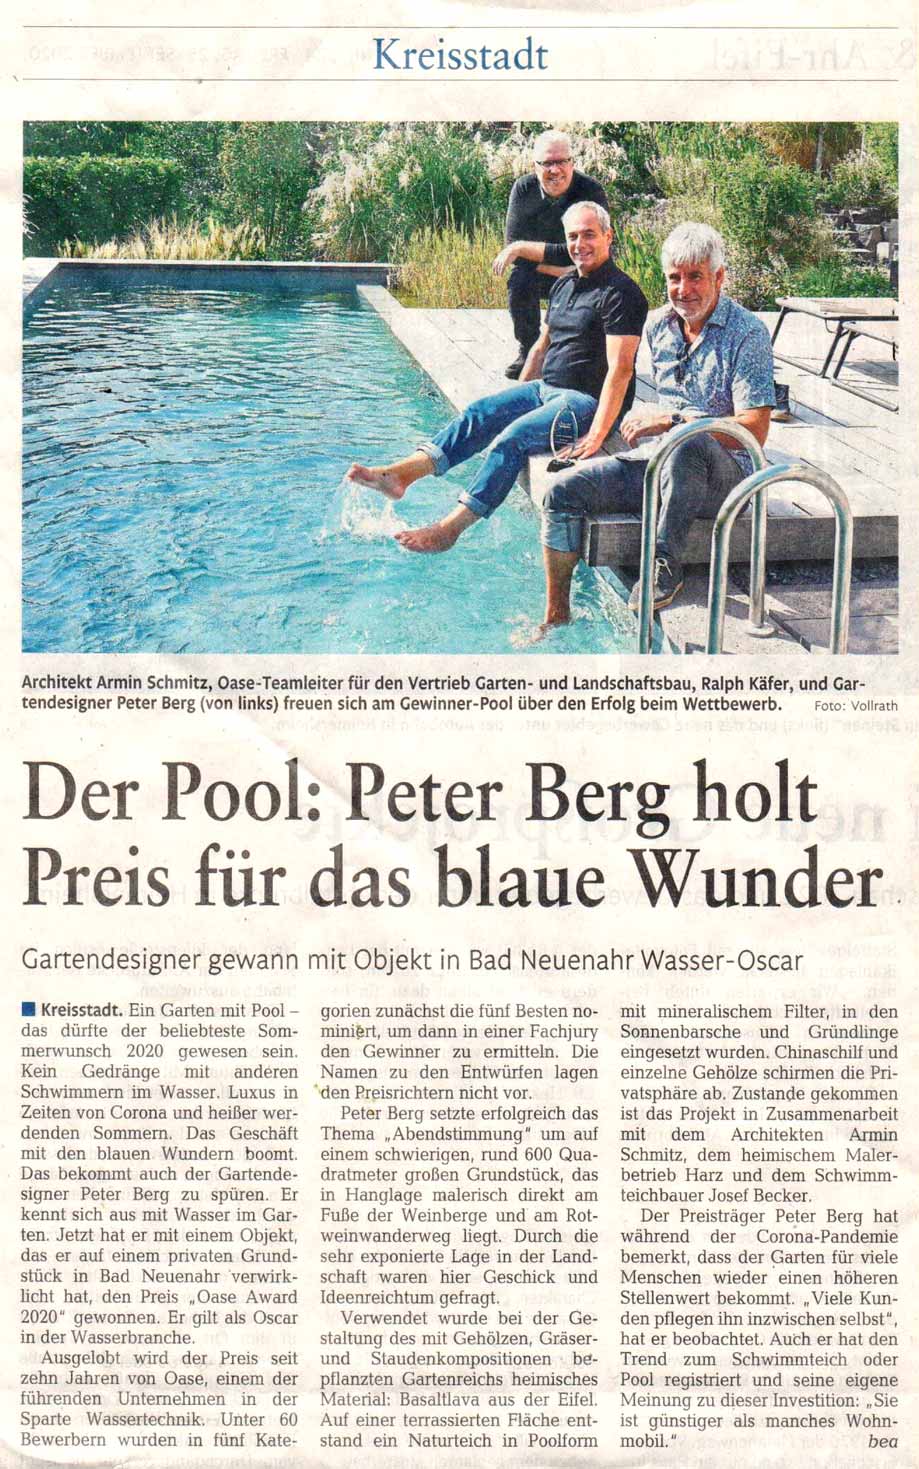 Zeitungsartikel über den Preisgewinn von Peter Berg für Garten mit Pool